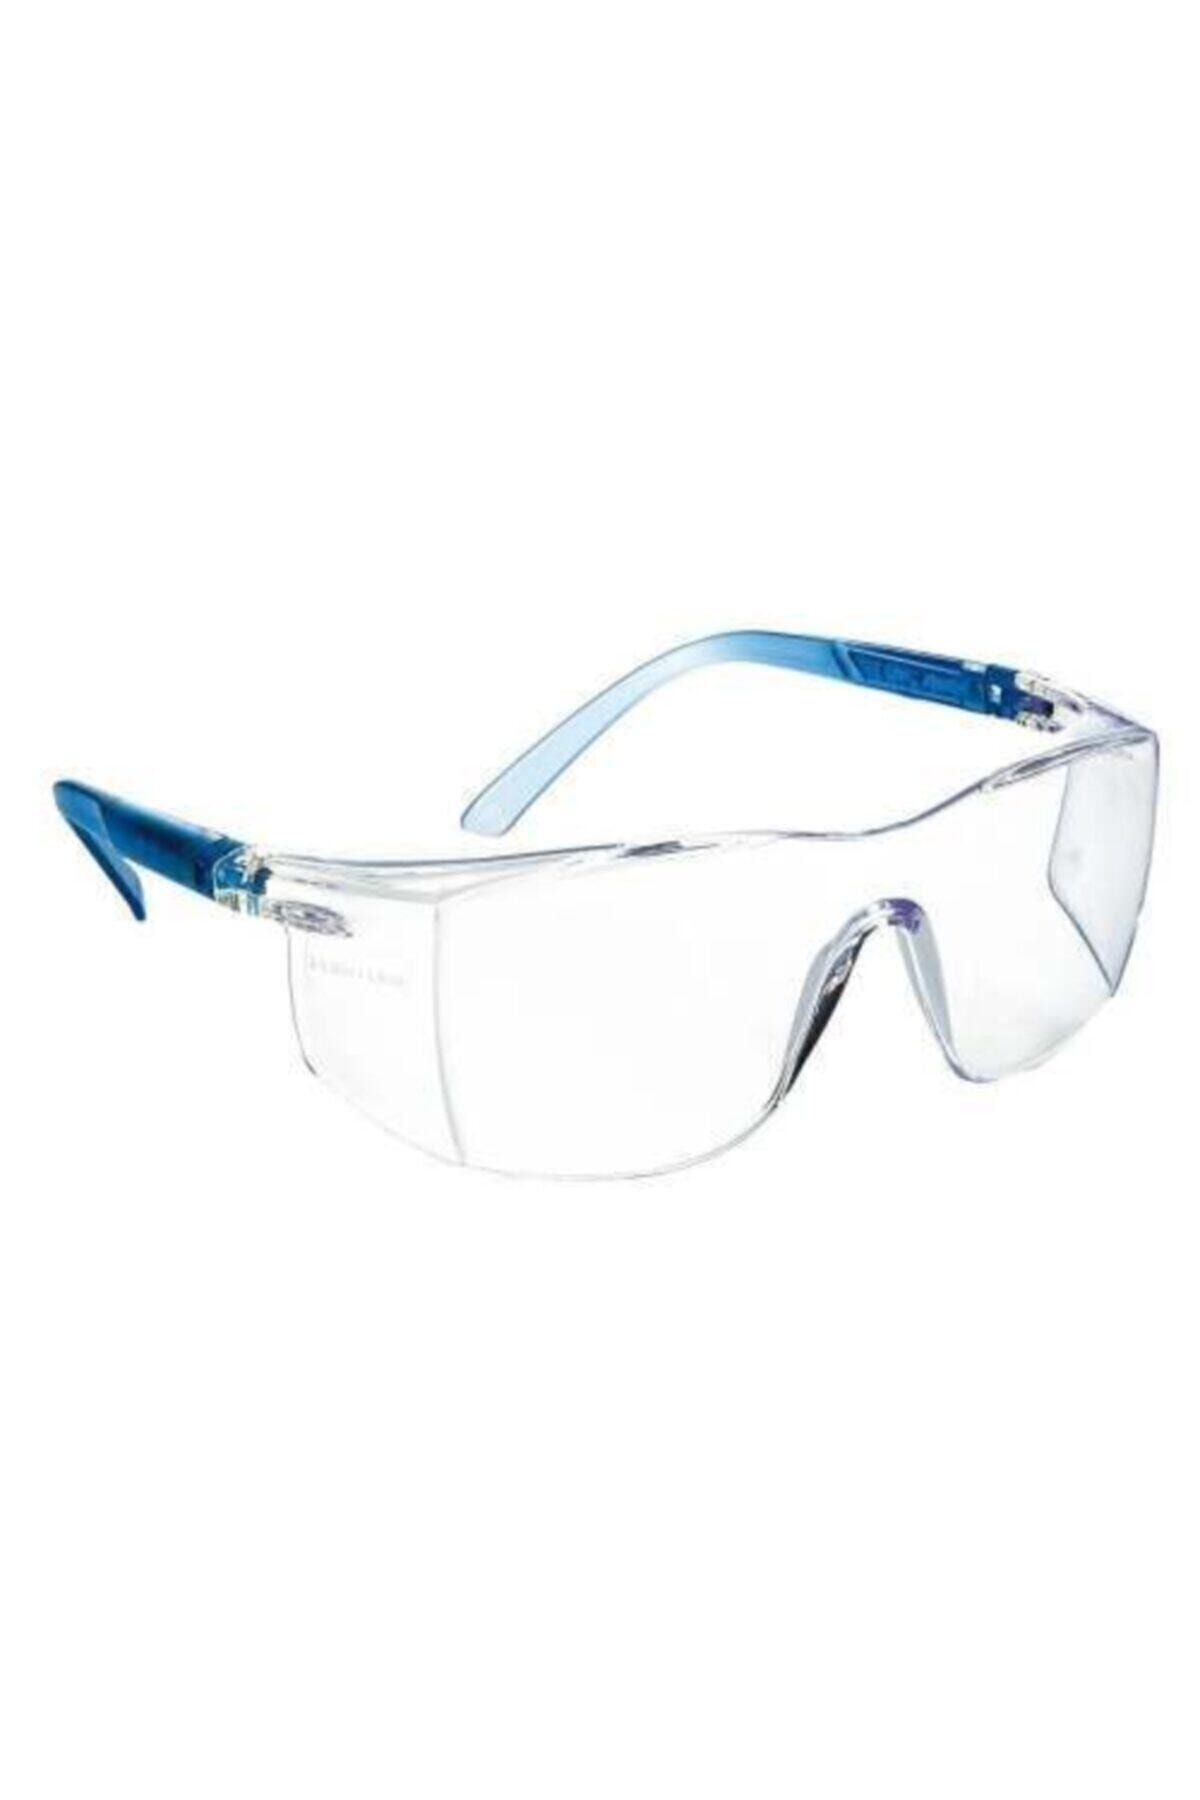 Energy E 400 Çok Amaçlı Koruyucu Şeffaf Gözlük Iş Güvenliği Çapak Gözlüğü